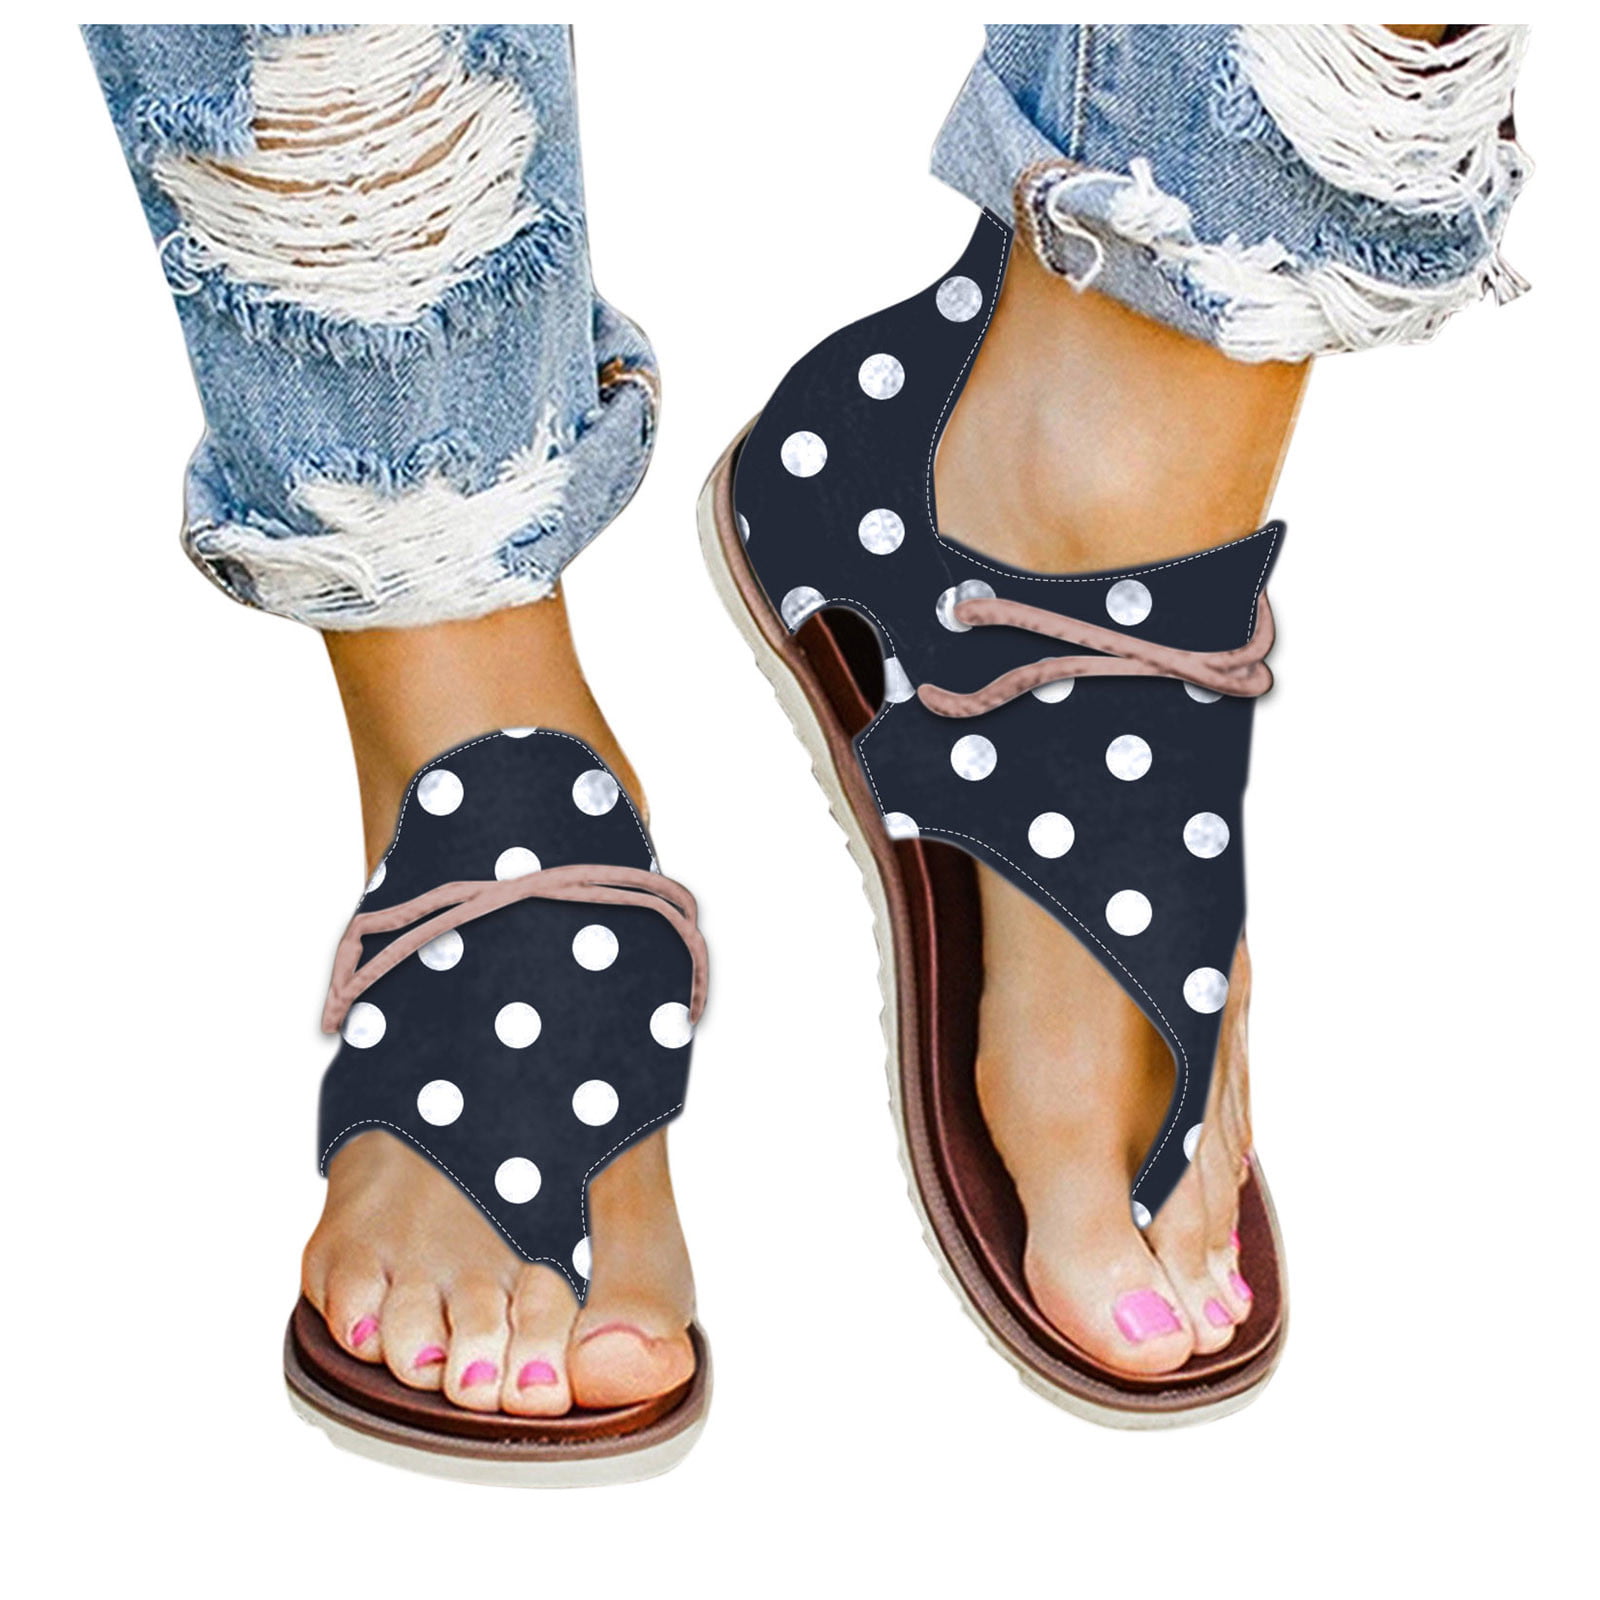 Women Sandals Plus Size Gladiator Sandals for Beach Shoes Woman Rome Flat Sandals Soft Flip Flop,Gray,4.5